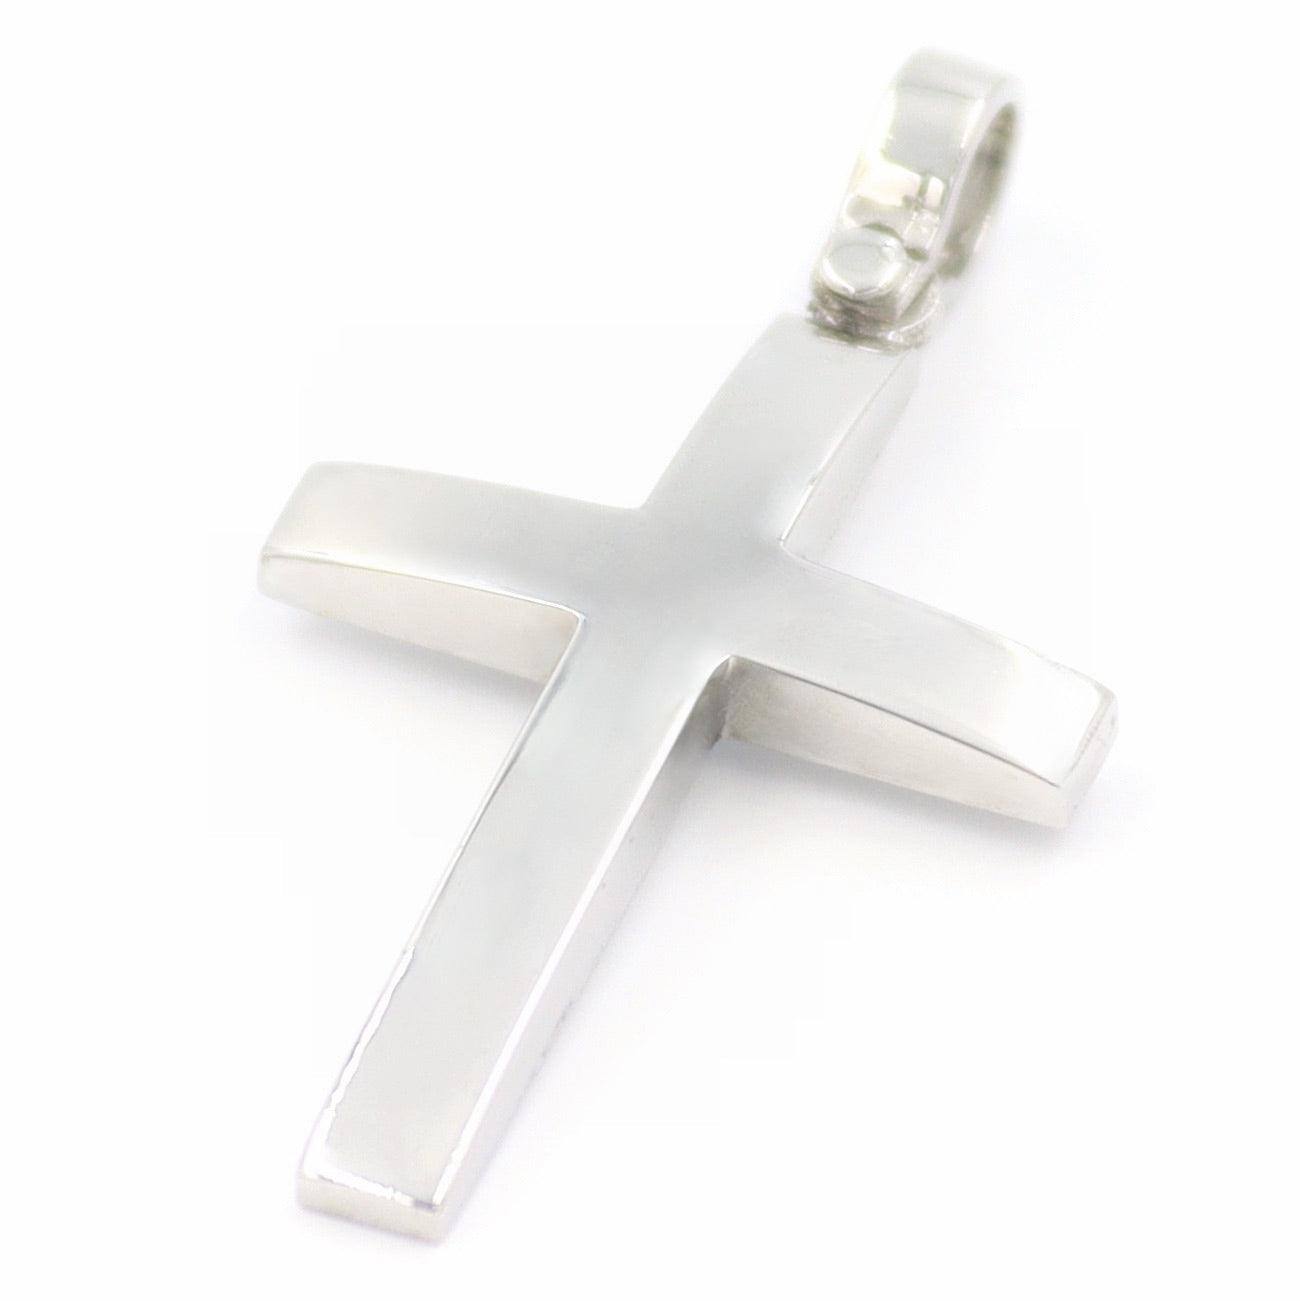 Λευκόχρυσος σταυρός με λεία λουστράτη επιφάνεια για βάπτιση αγοριού